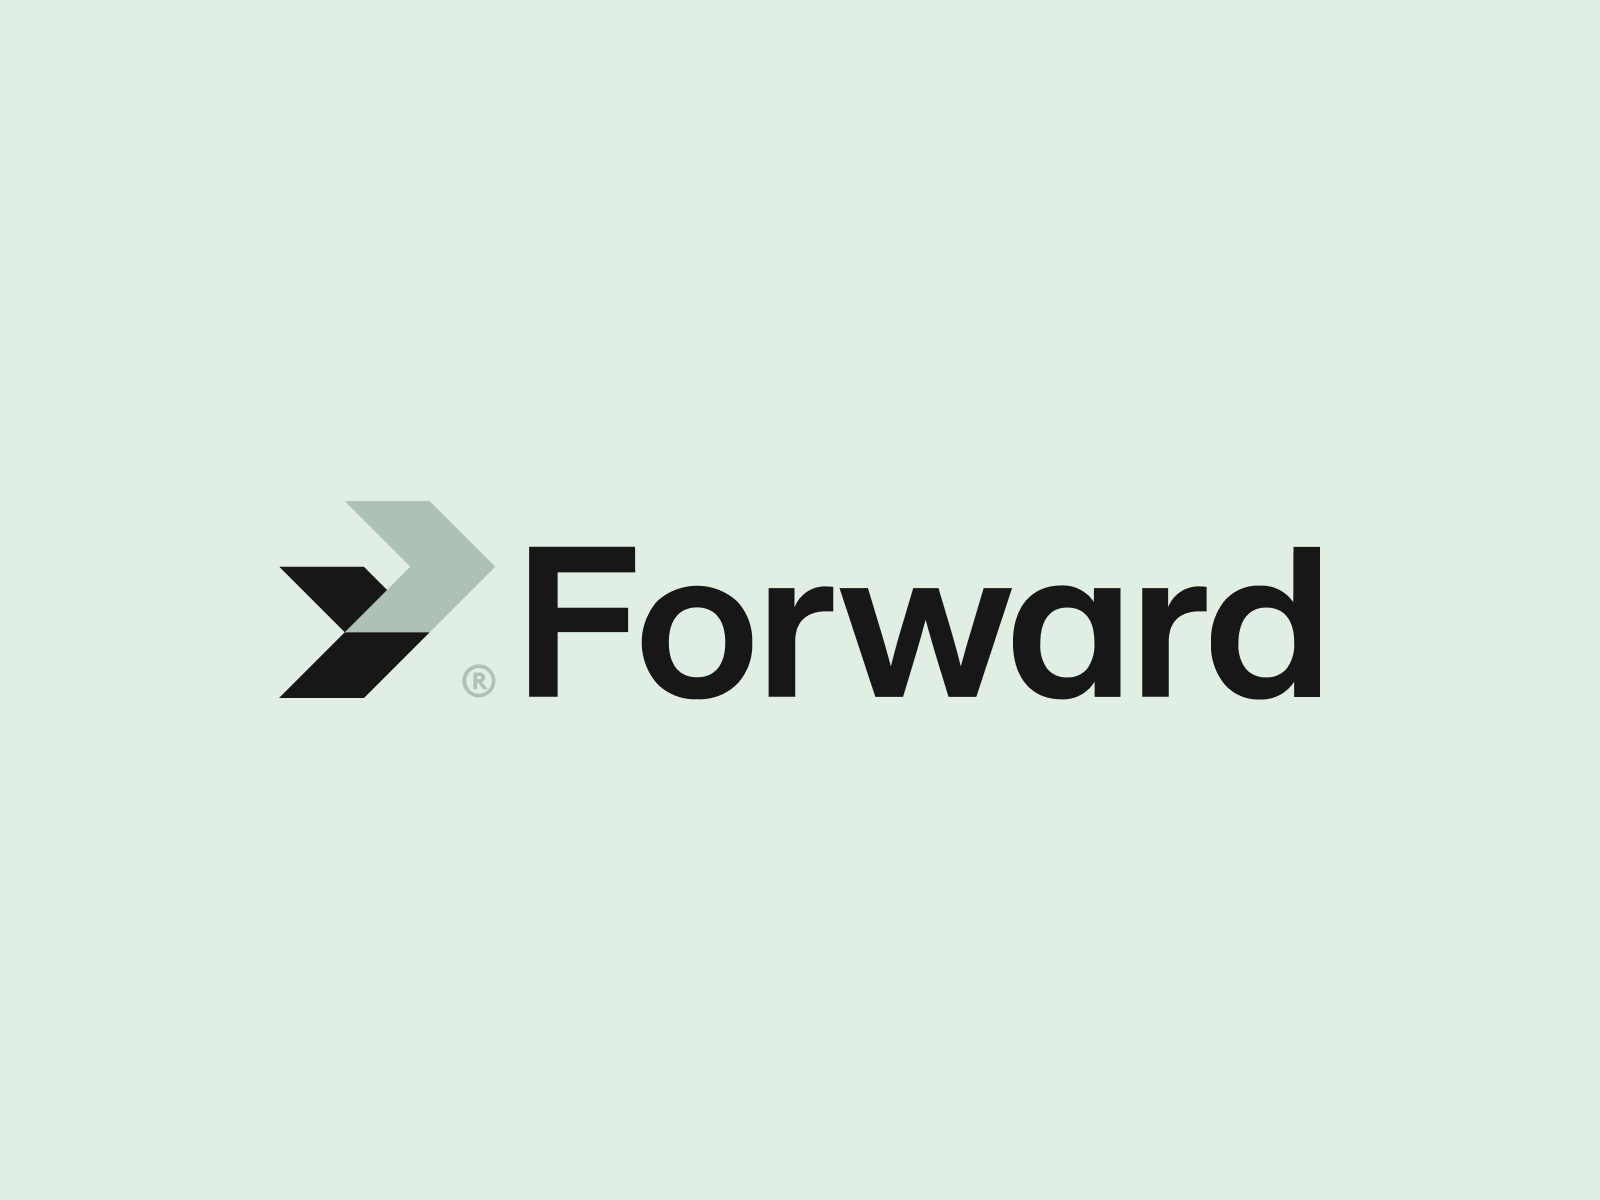 Forward Branding & Logo Design